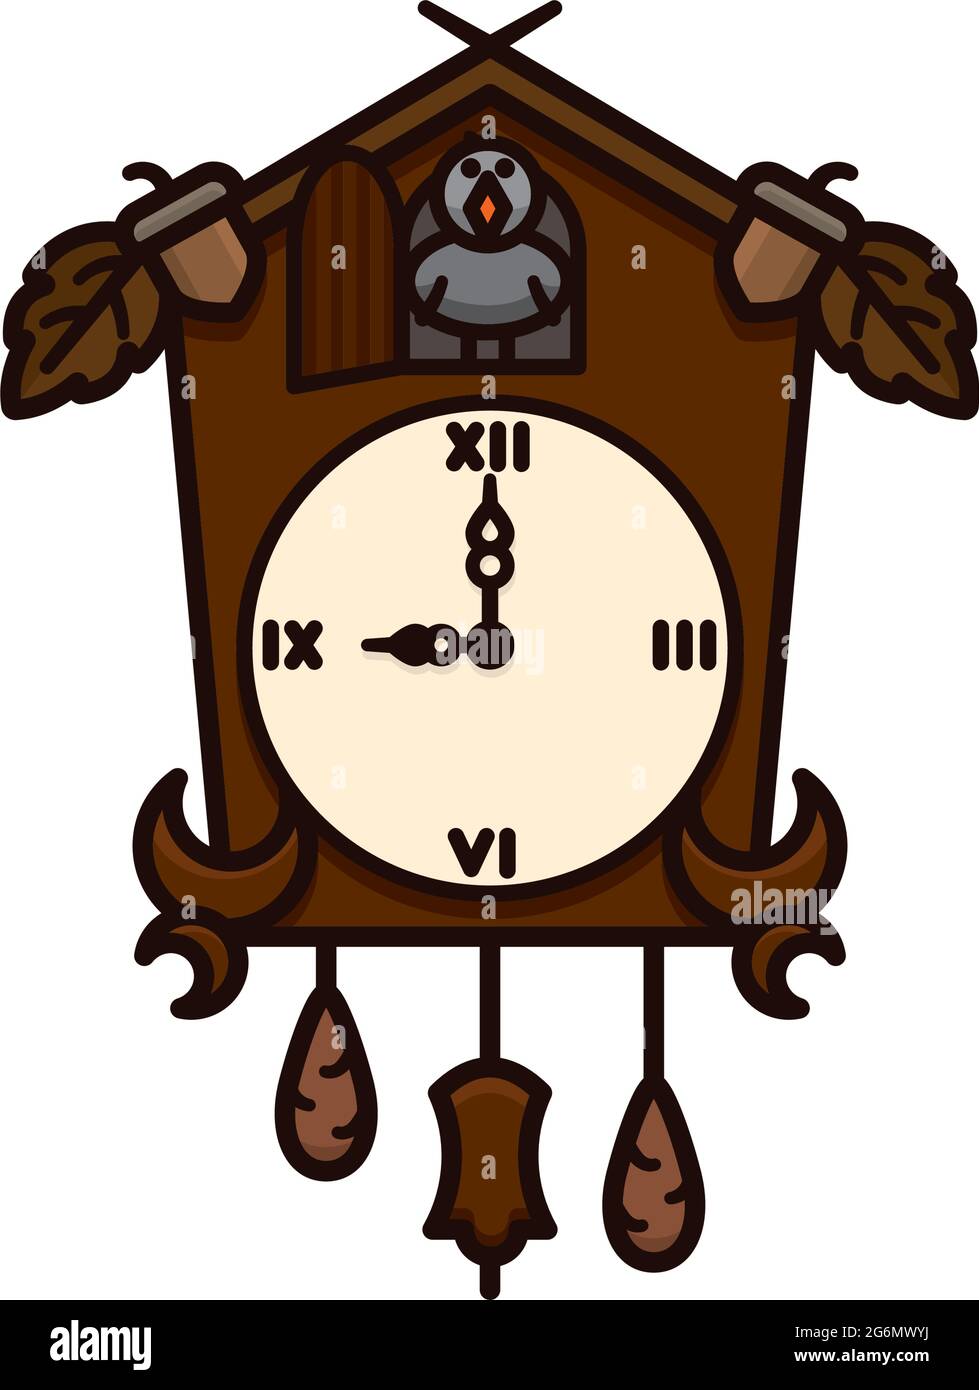 Black Forest Cuckoo Clock illustration vectorielle isolée pour la journée Tick Tock le 29 décembre Illustration de Vecteur